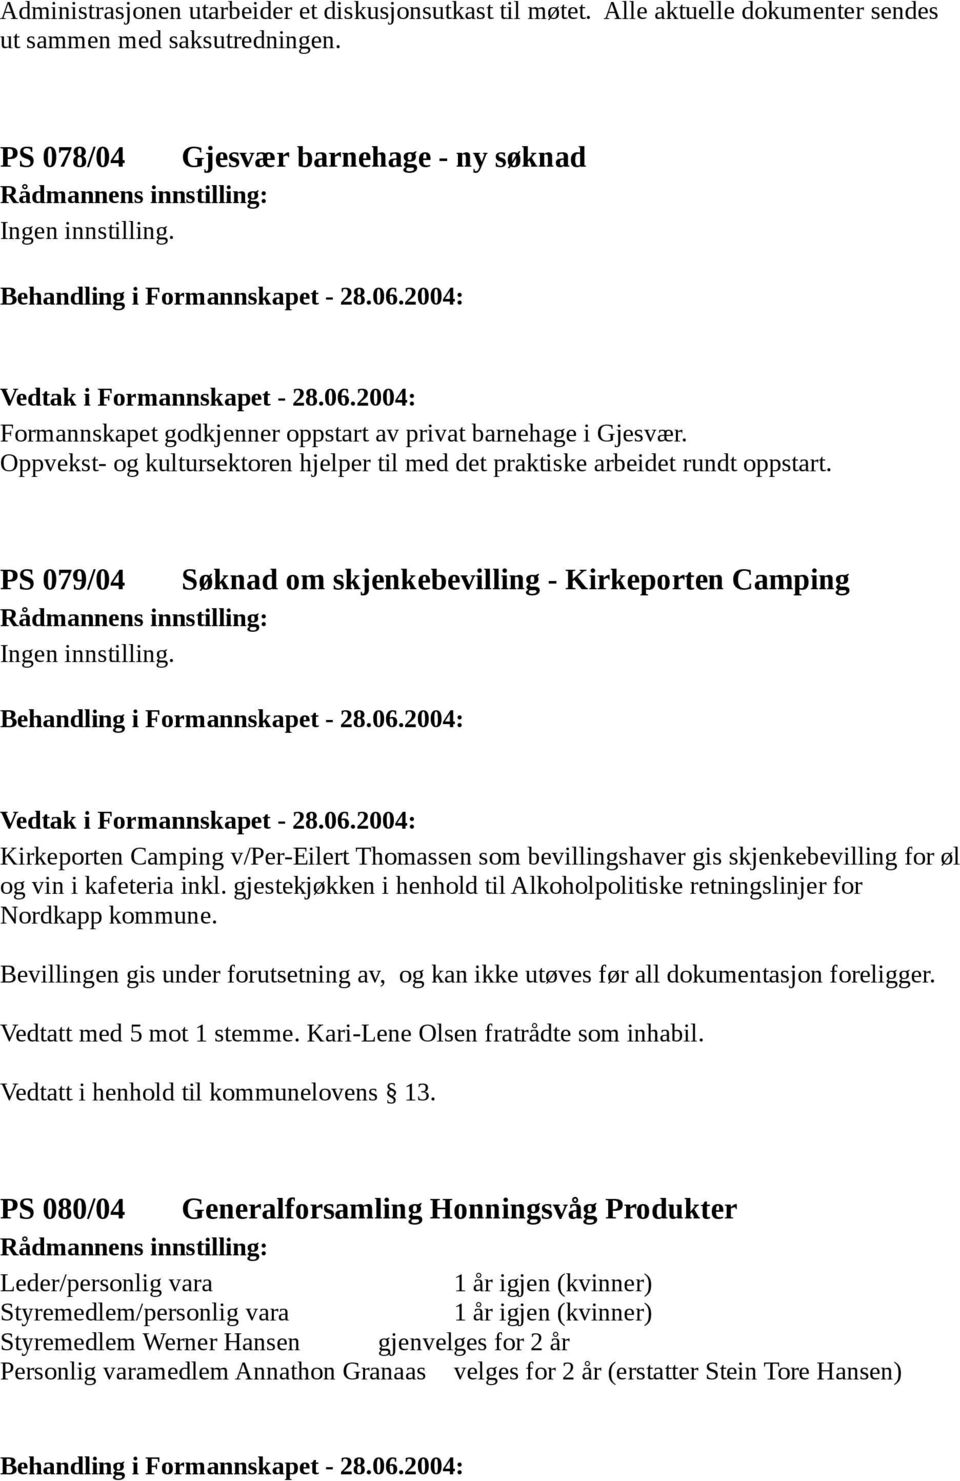 PS 079/04 Søknad om skjenkebevilling - Kirkeporten Camping Kirkeporten Camping v/per-eilert Thomassen som bevillingshaver gis skjenkebevilling for øl og vin i kafeteria inkl.